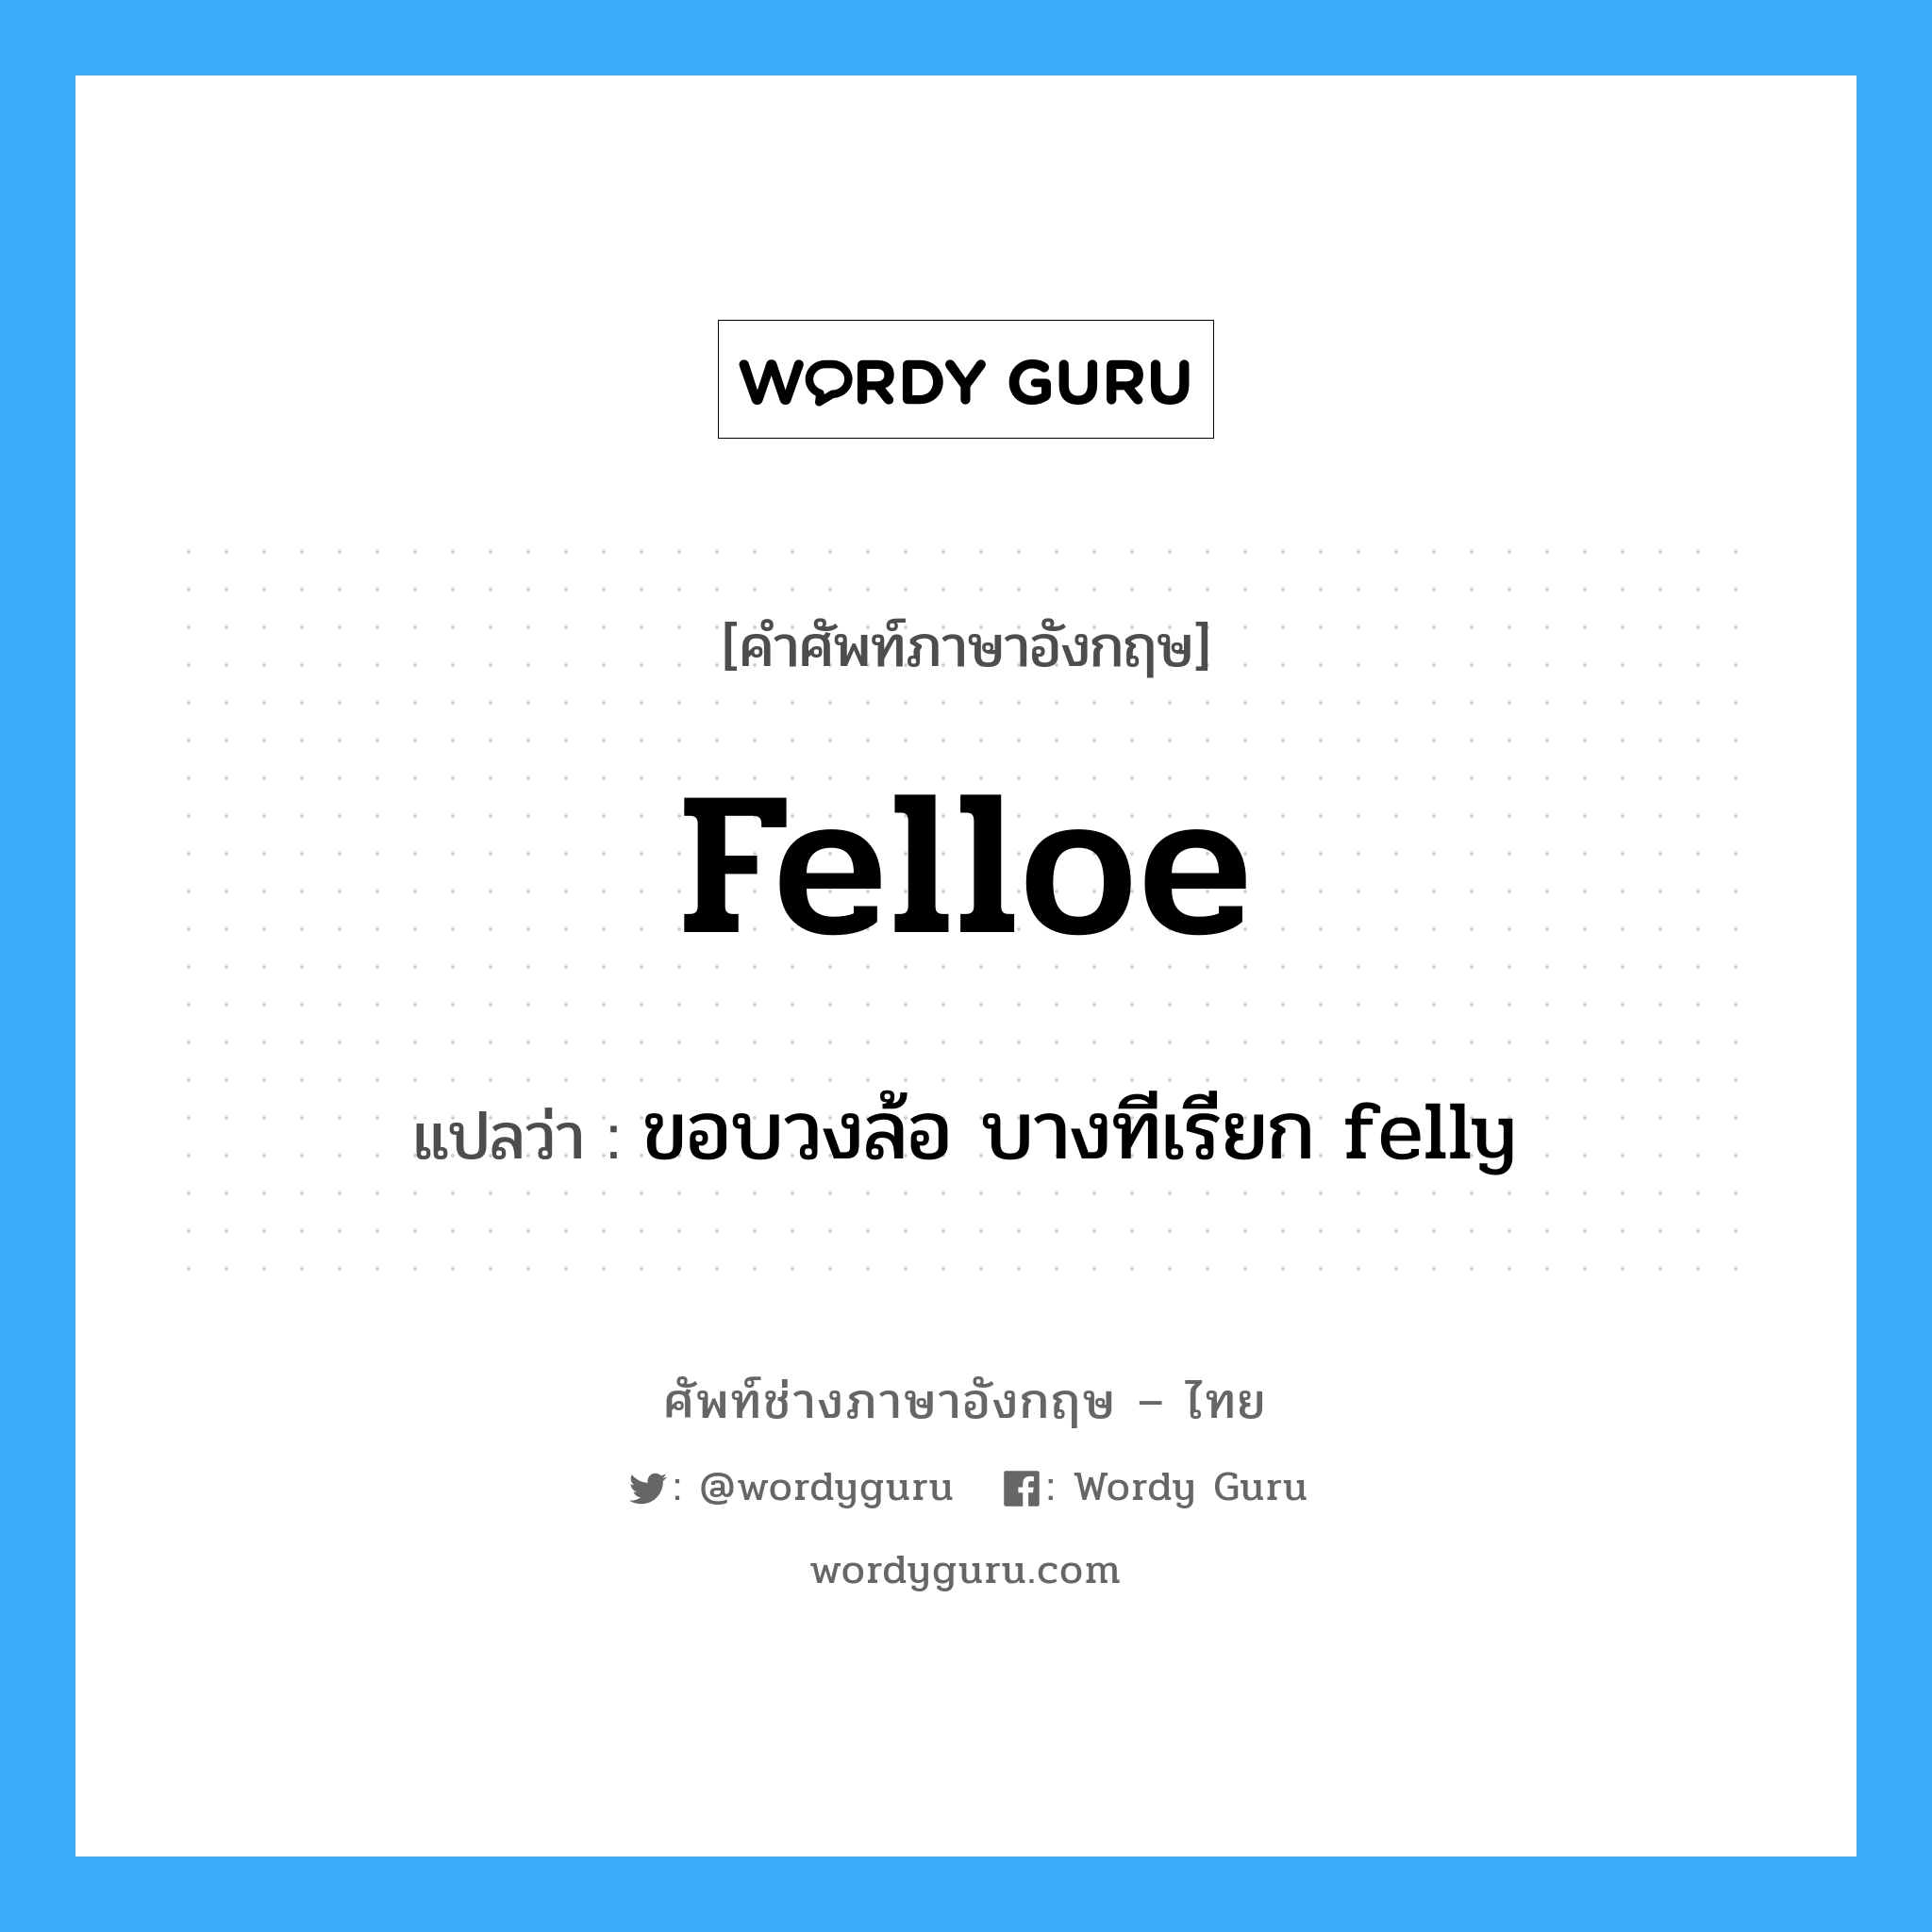 ขอบวงล้อ บางทีเรียก felly ภาษาอังกฤษ?, คำศัพท์ช่างภาษาอังกฤษ - ไทย ขอบวงล้อ บางทีเรียก felly คำศัพท์ภาษาอังกฤษ ขอบวงล้อ บางทีเรียก felly แปลว่า felloe